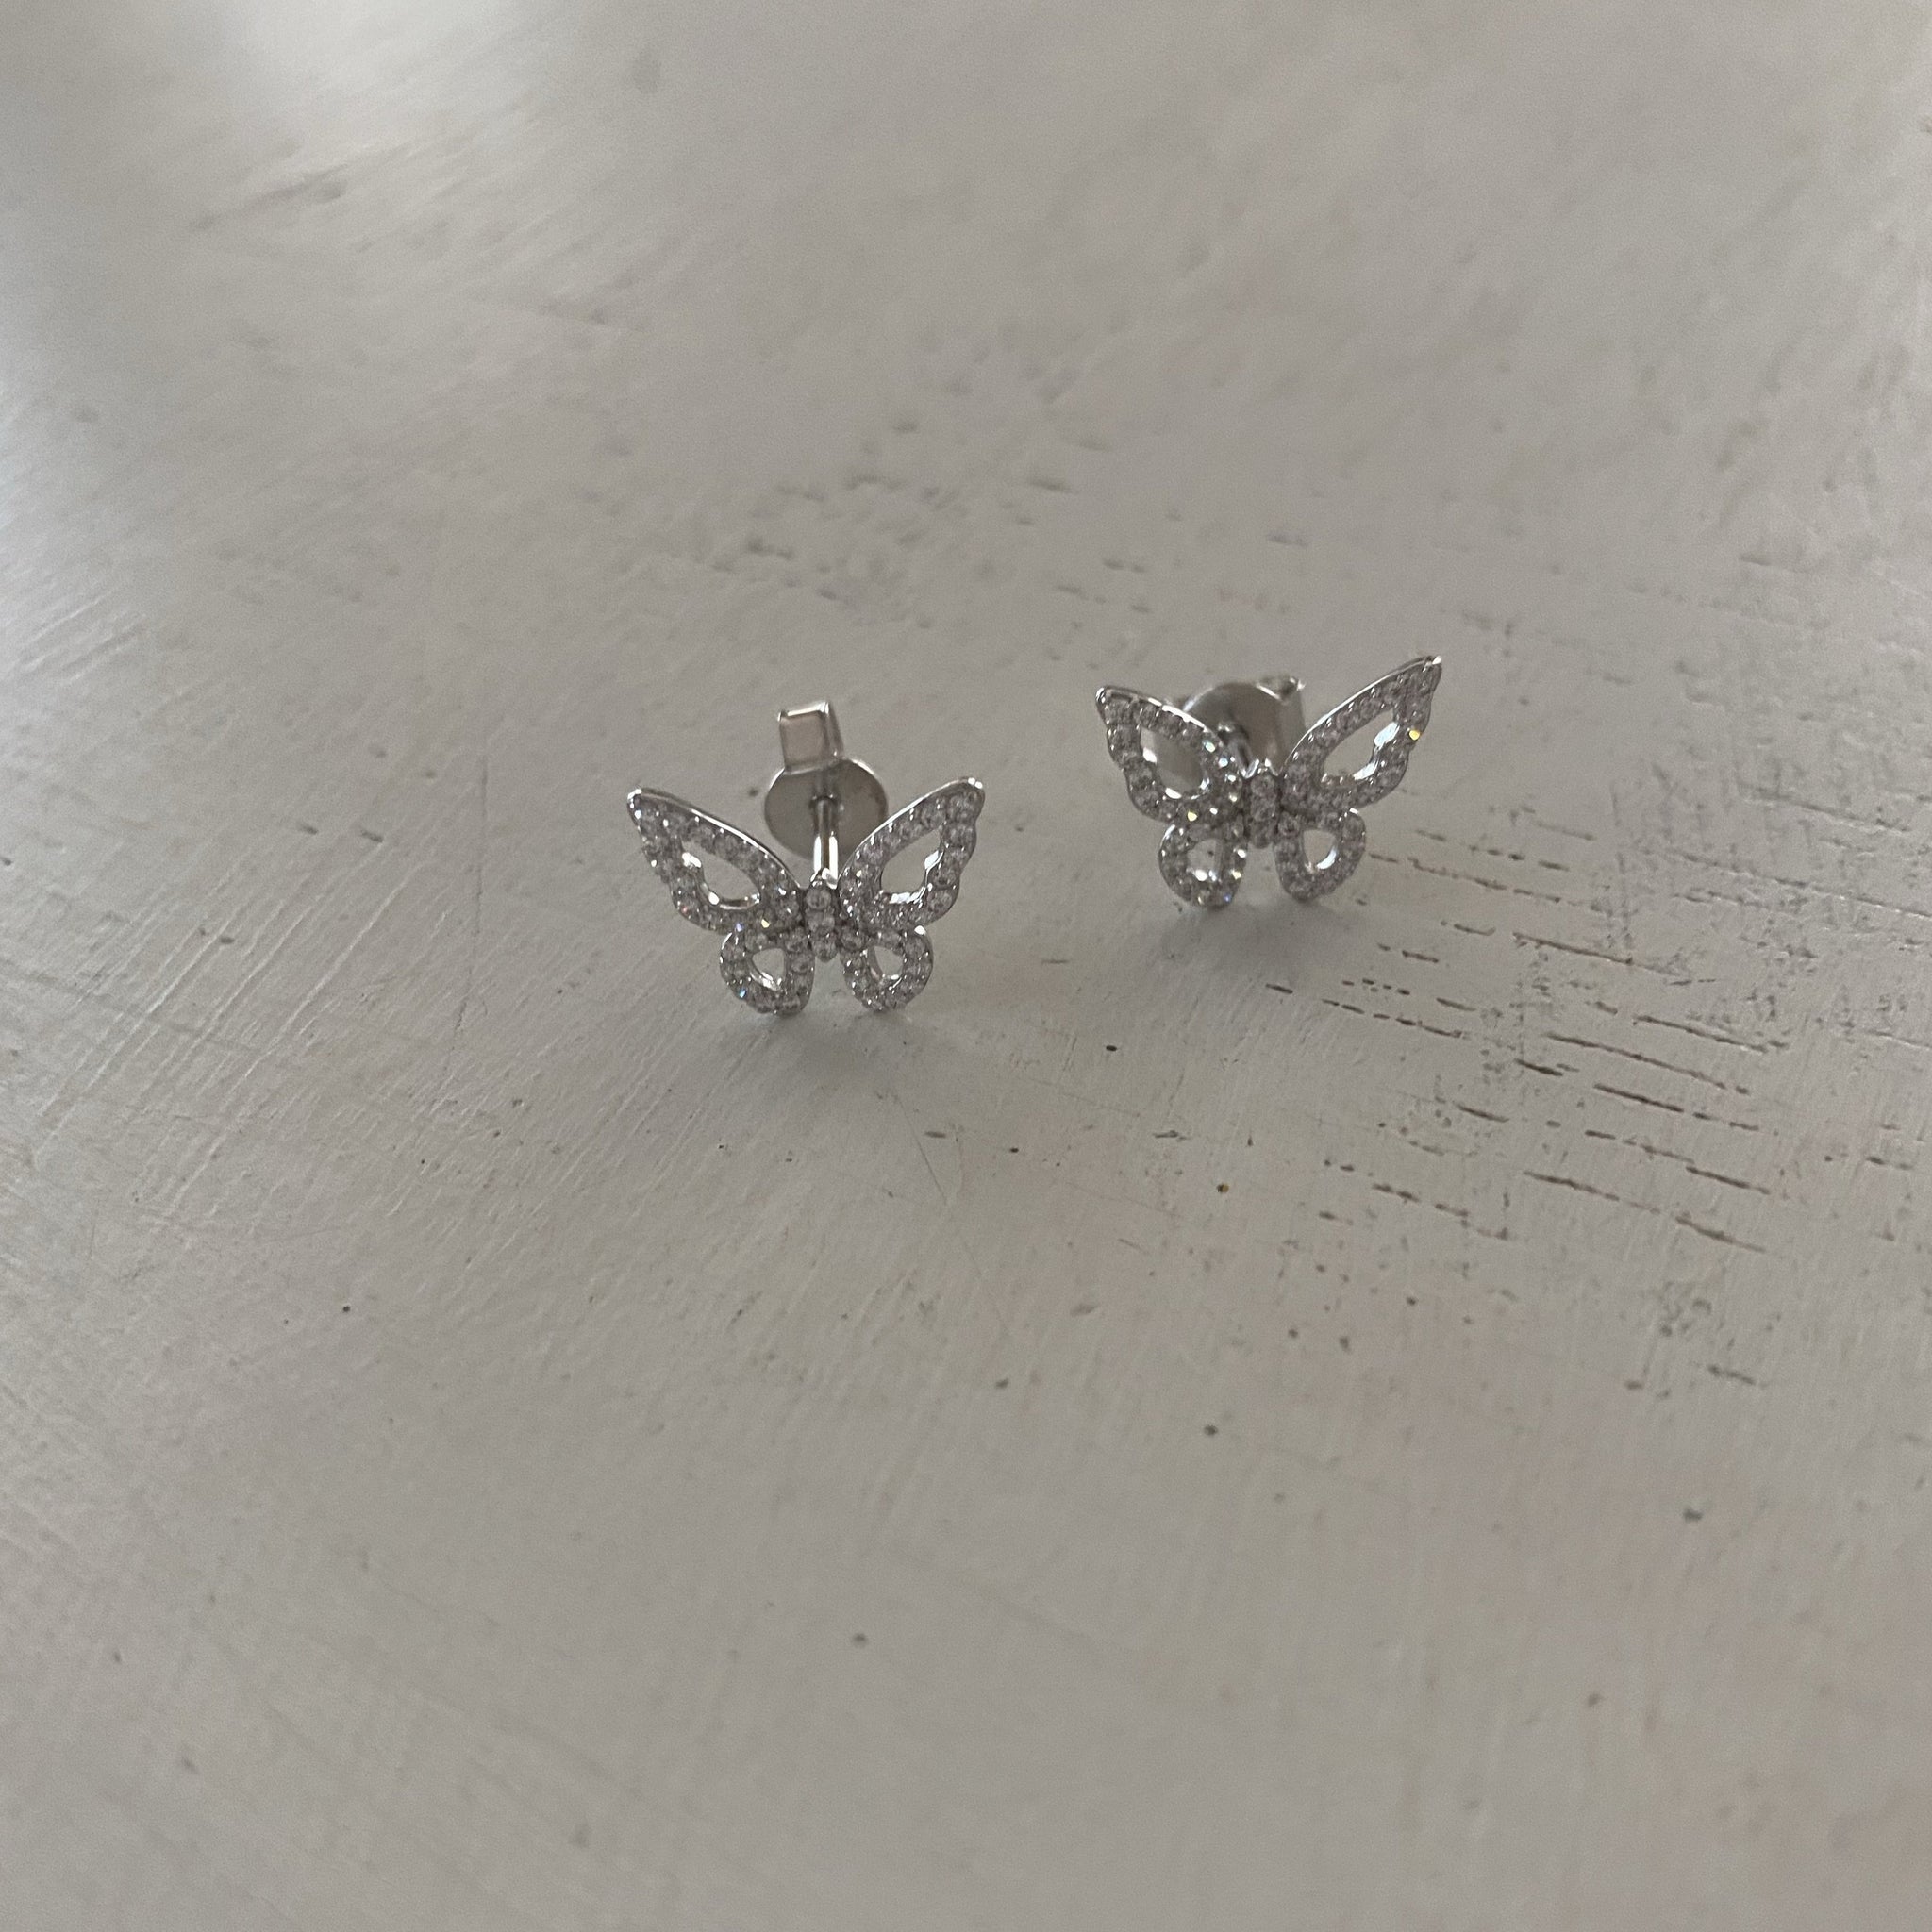 Morpho Butterfly Stud Earrings